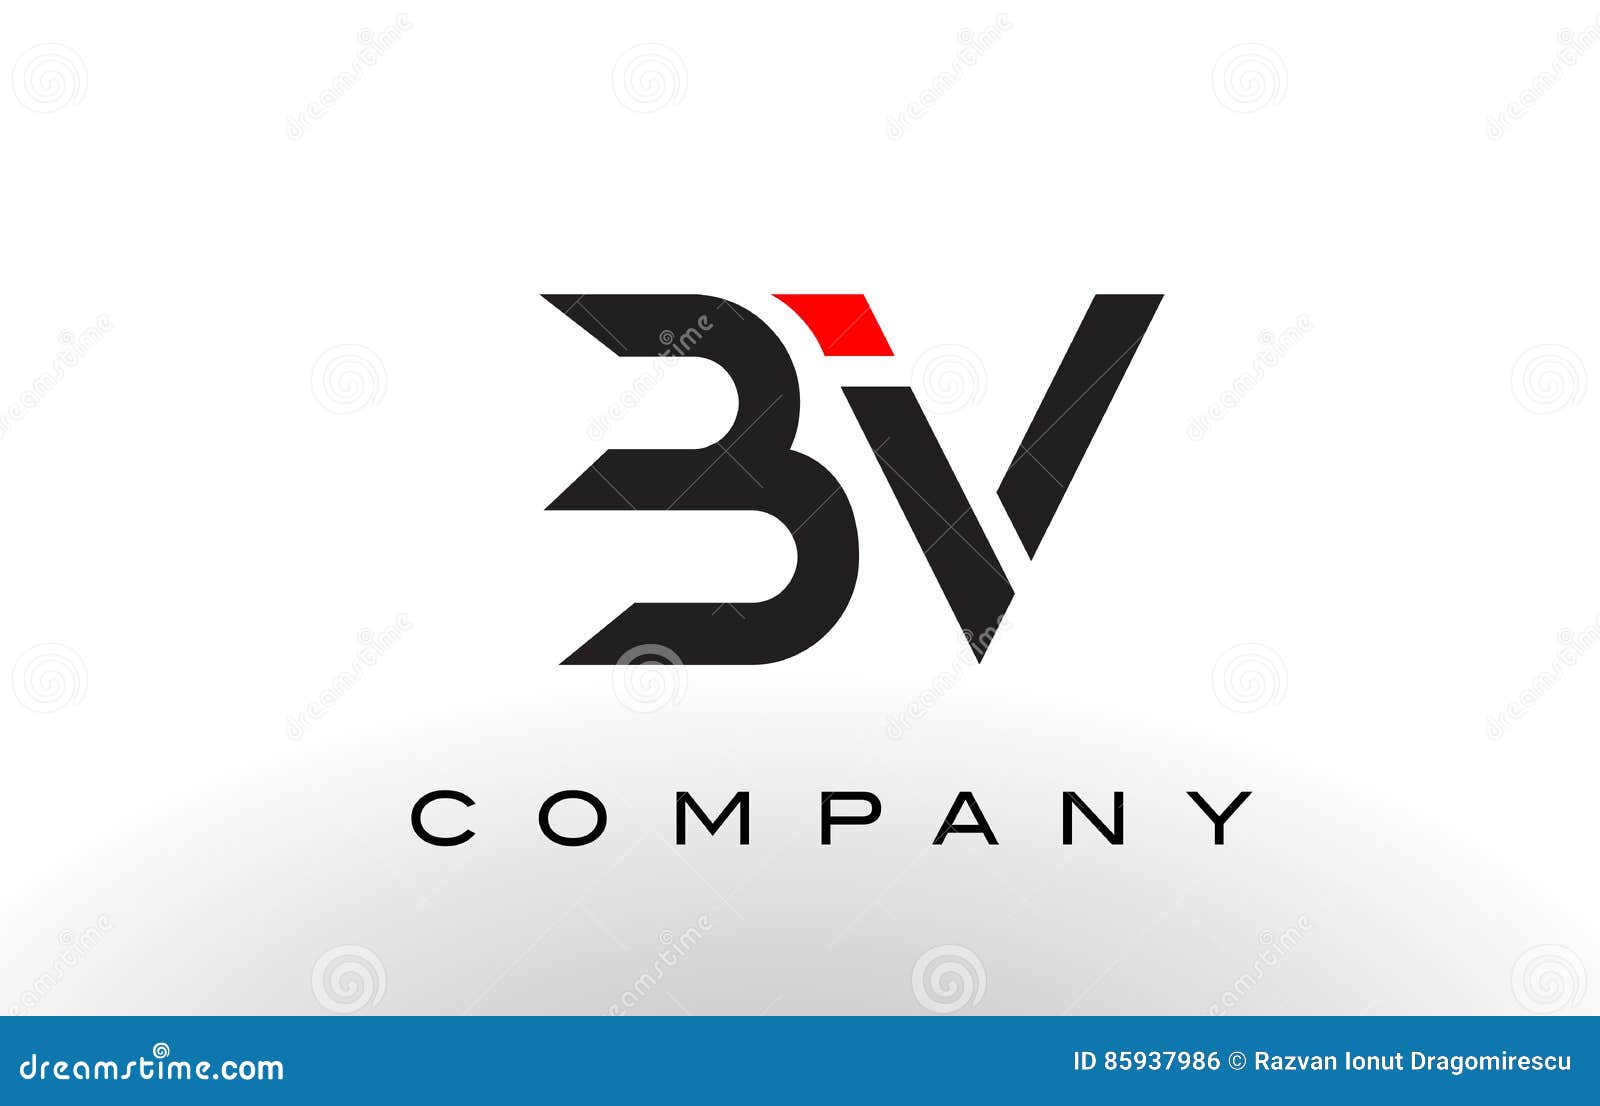 Av bv. Логотип BV. Longship BV логотип. CMP Fibalite BV лого. Edhj[BV лого.